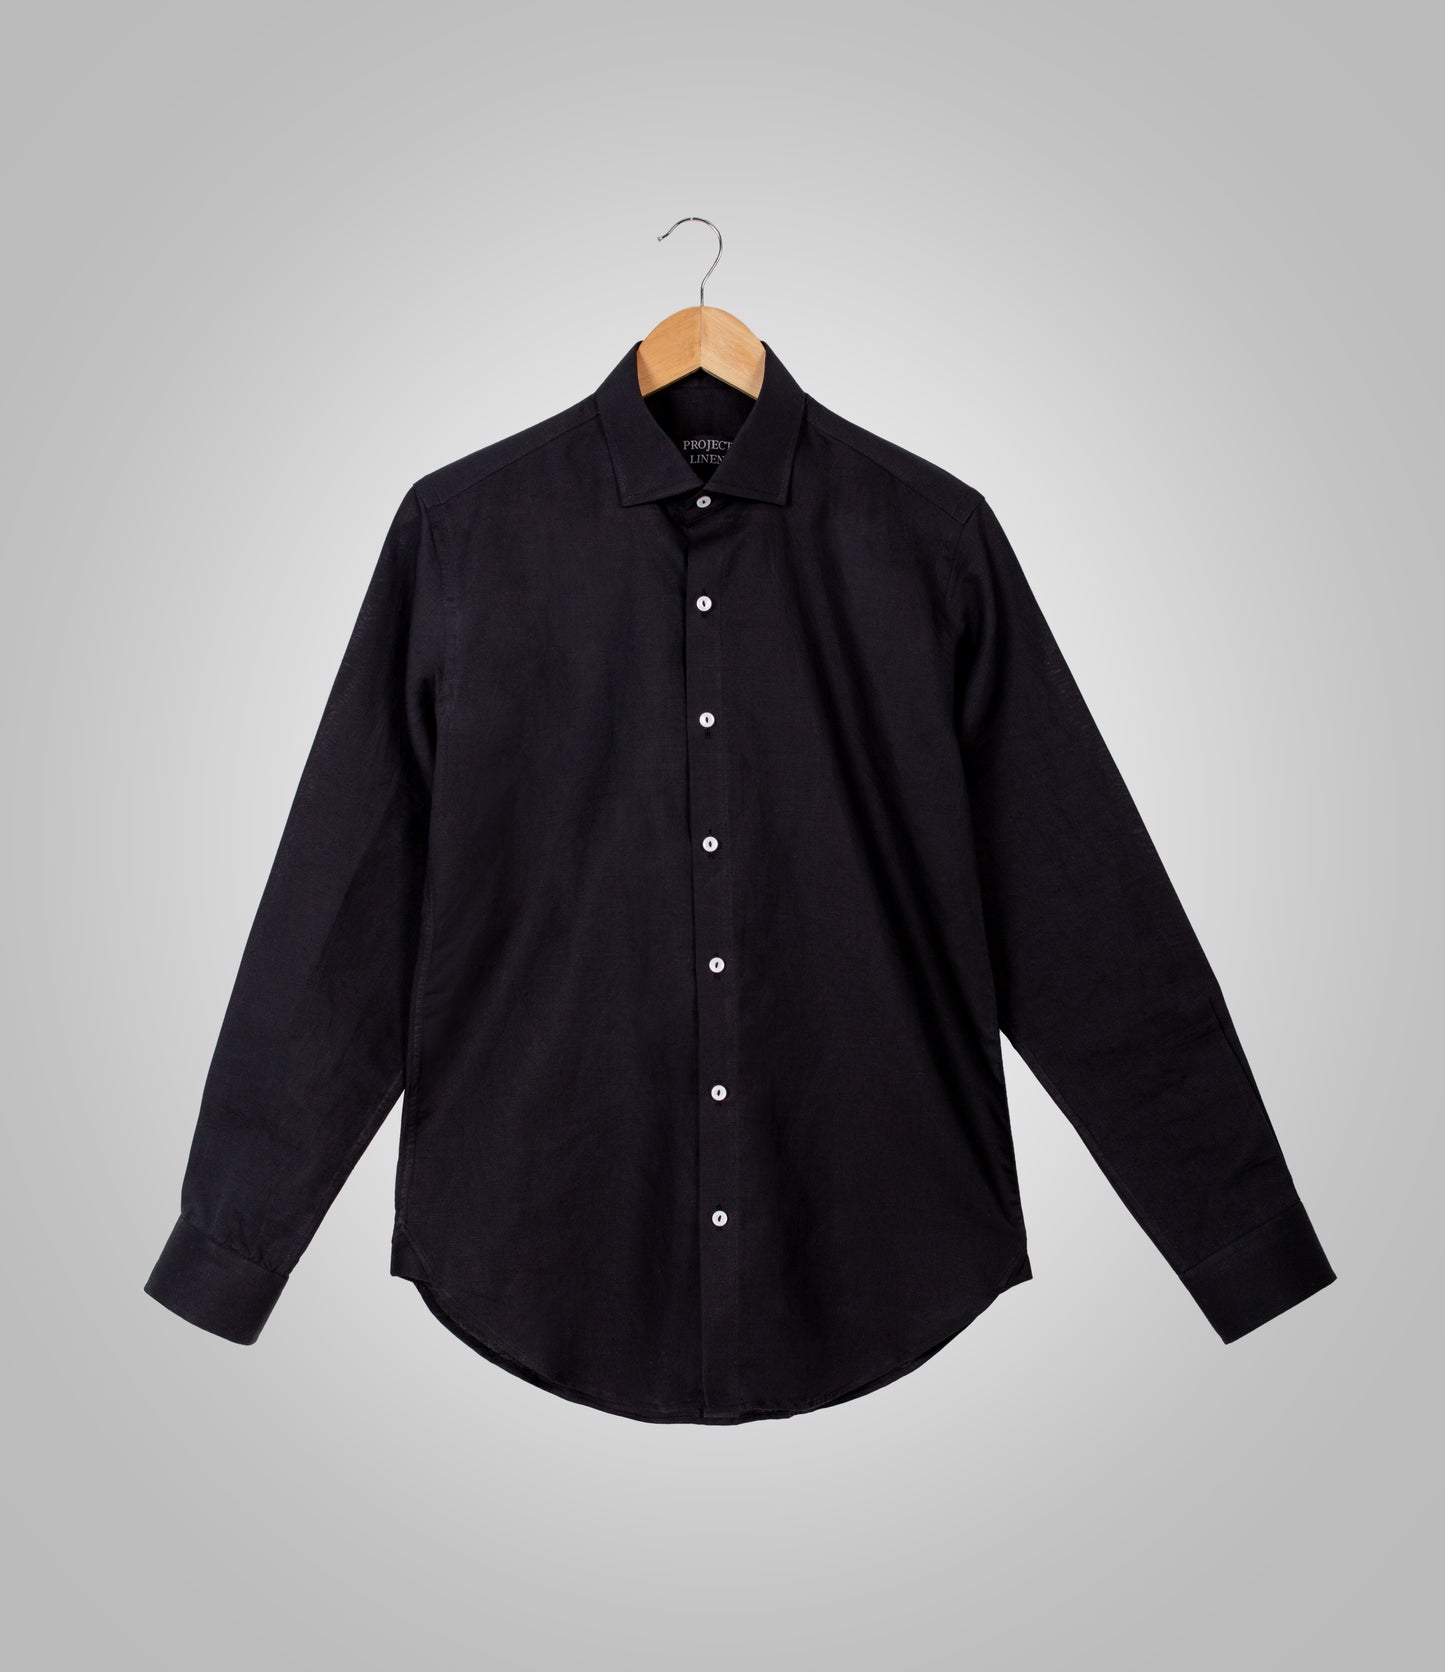 Basic Black Linen Shirt